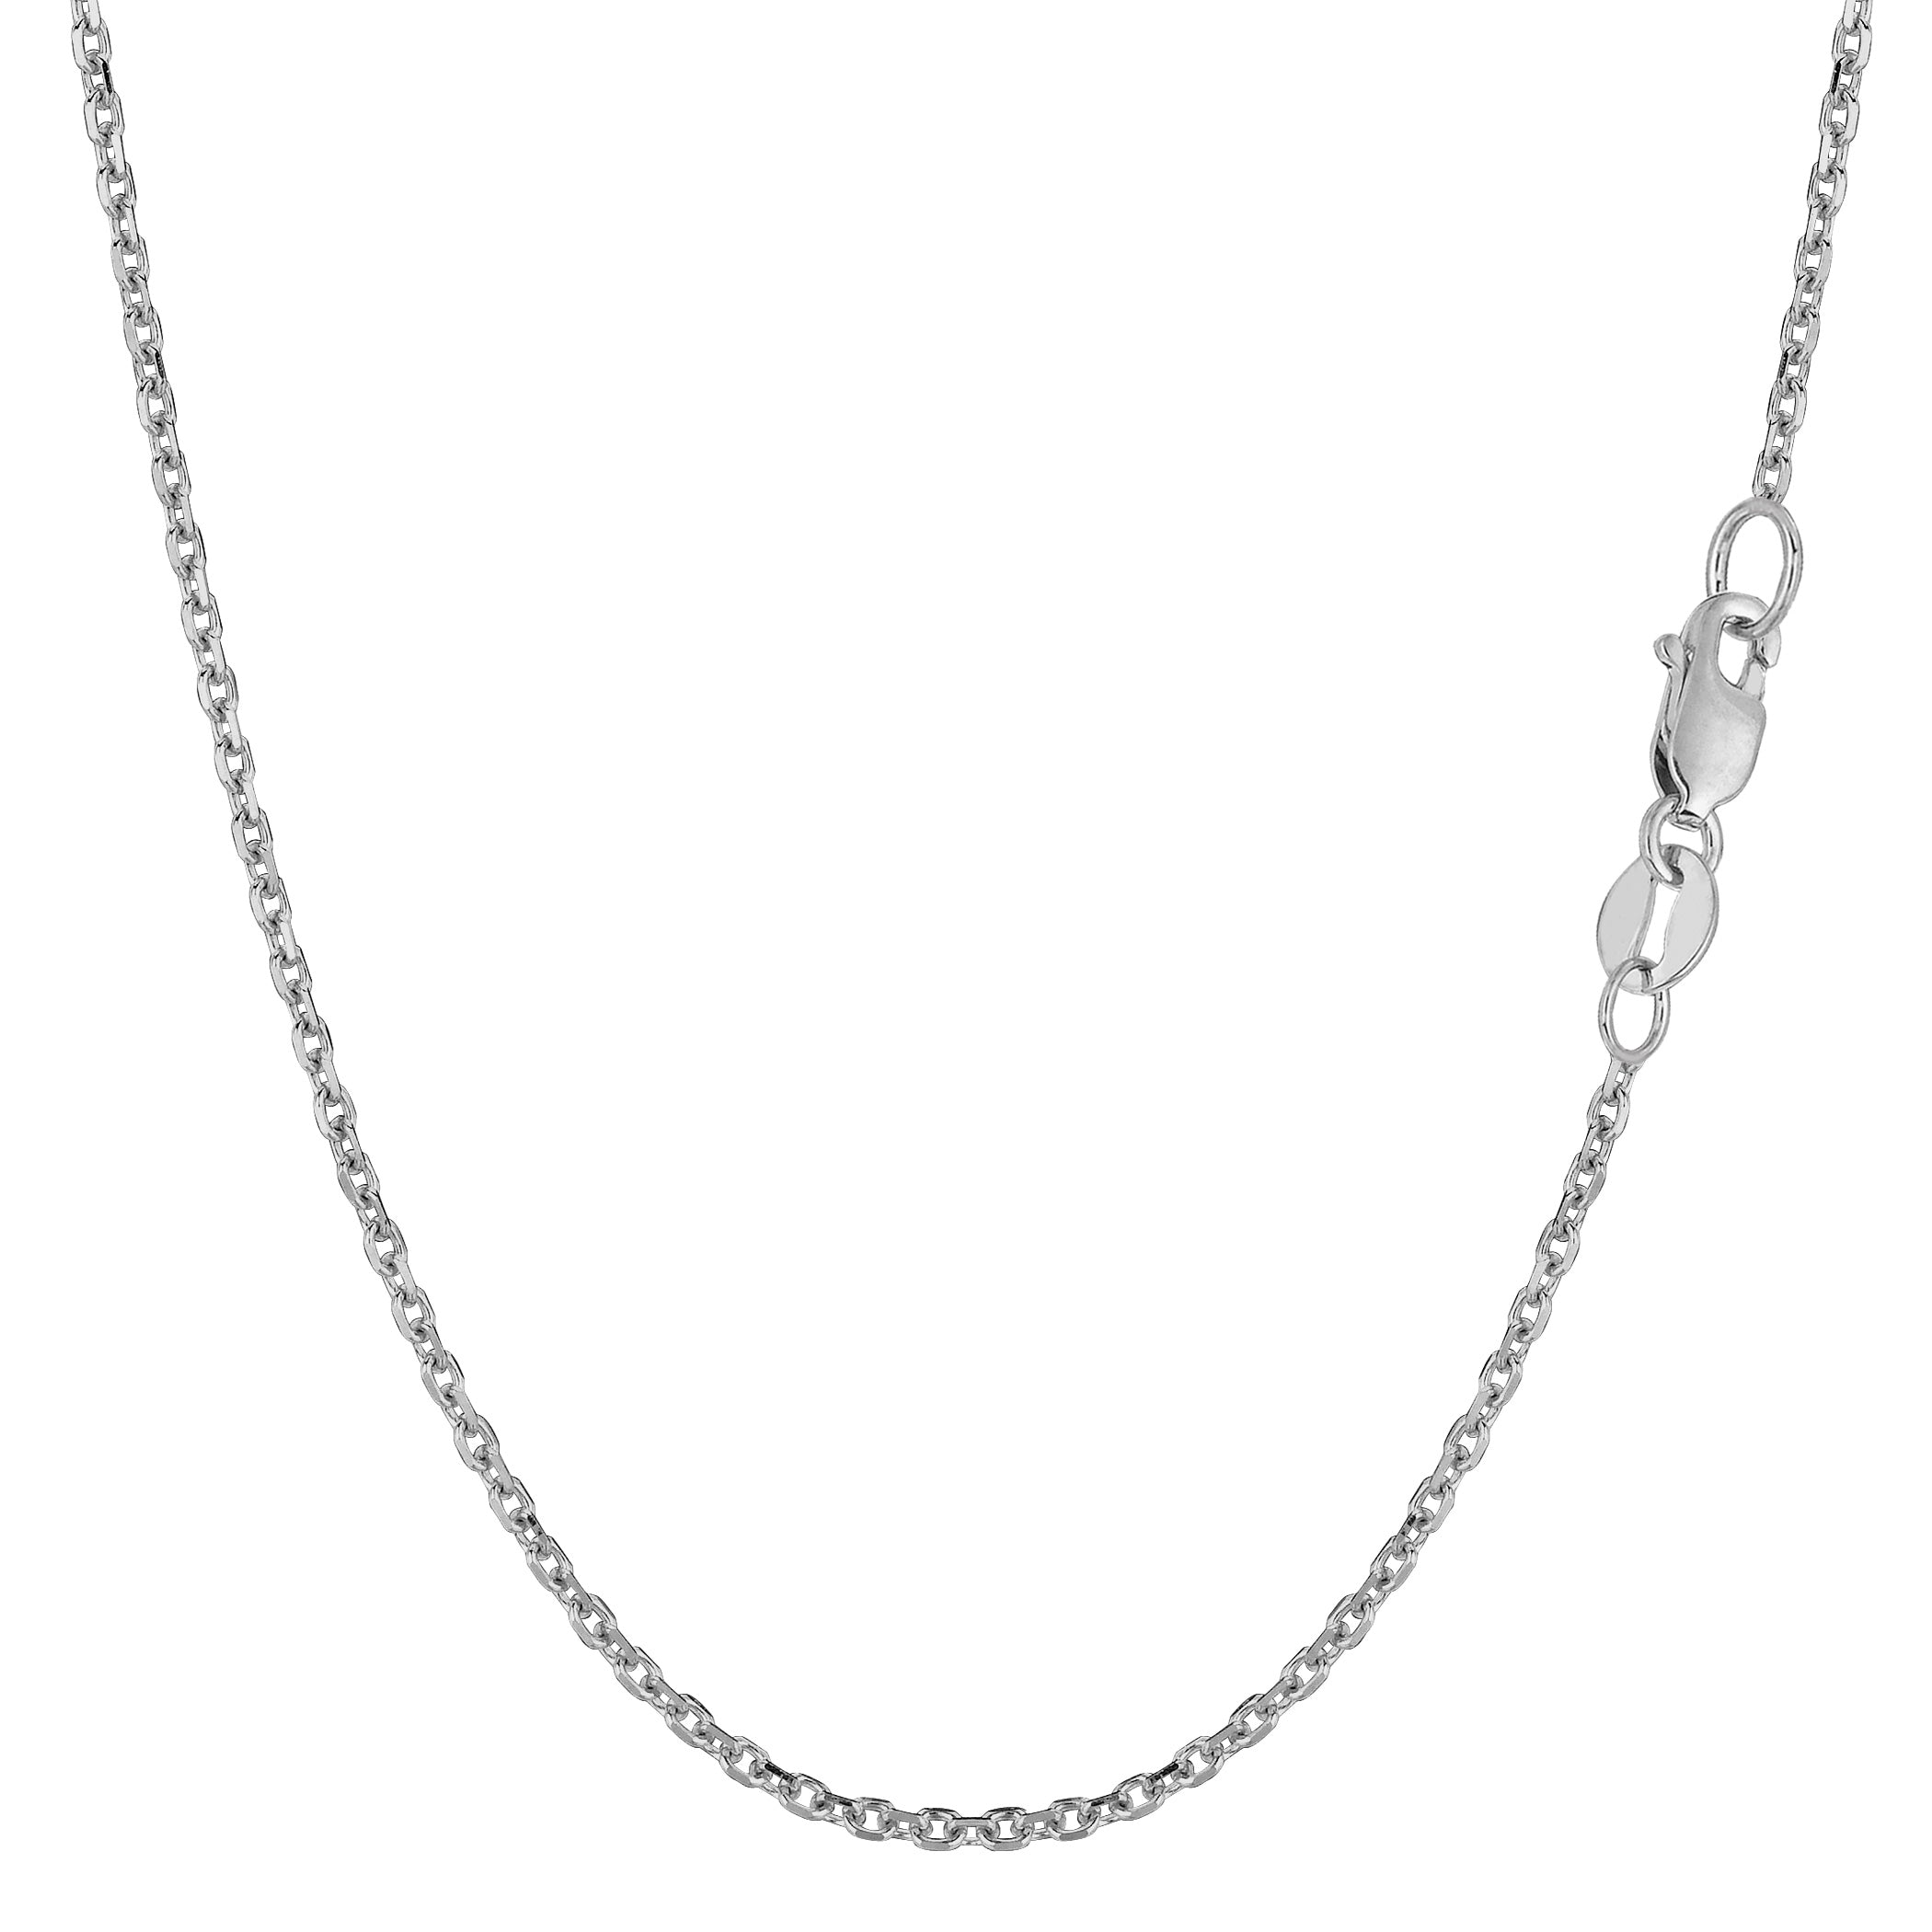 Collar de cadena con eslabones tipo cable de oro blanco de 14 k, joyería fina de diseño de 1,5 mm para hombres y mujeres